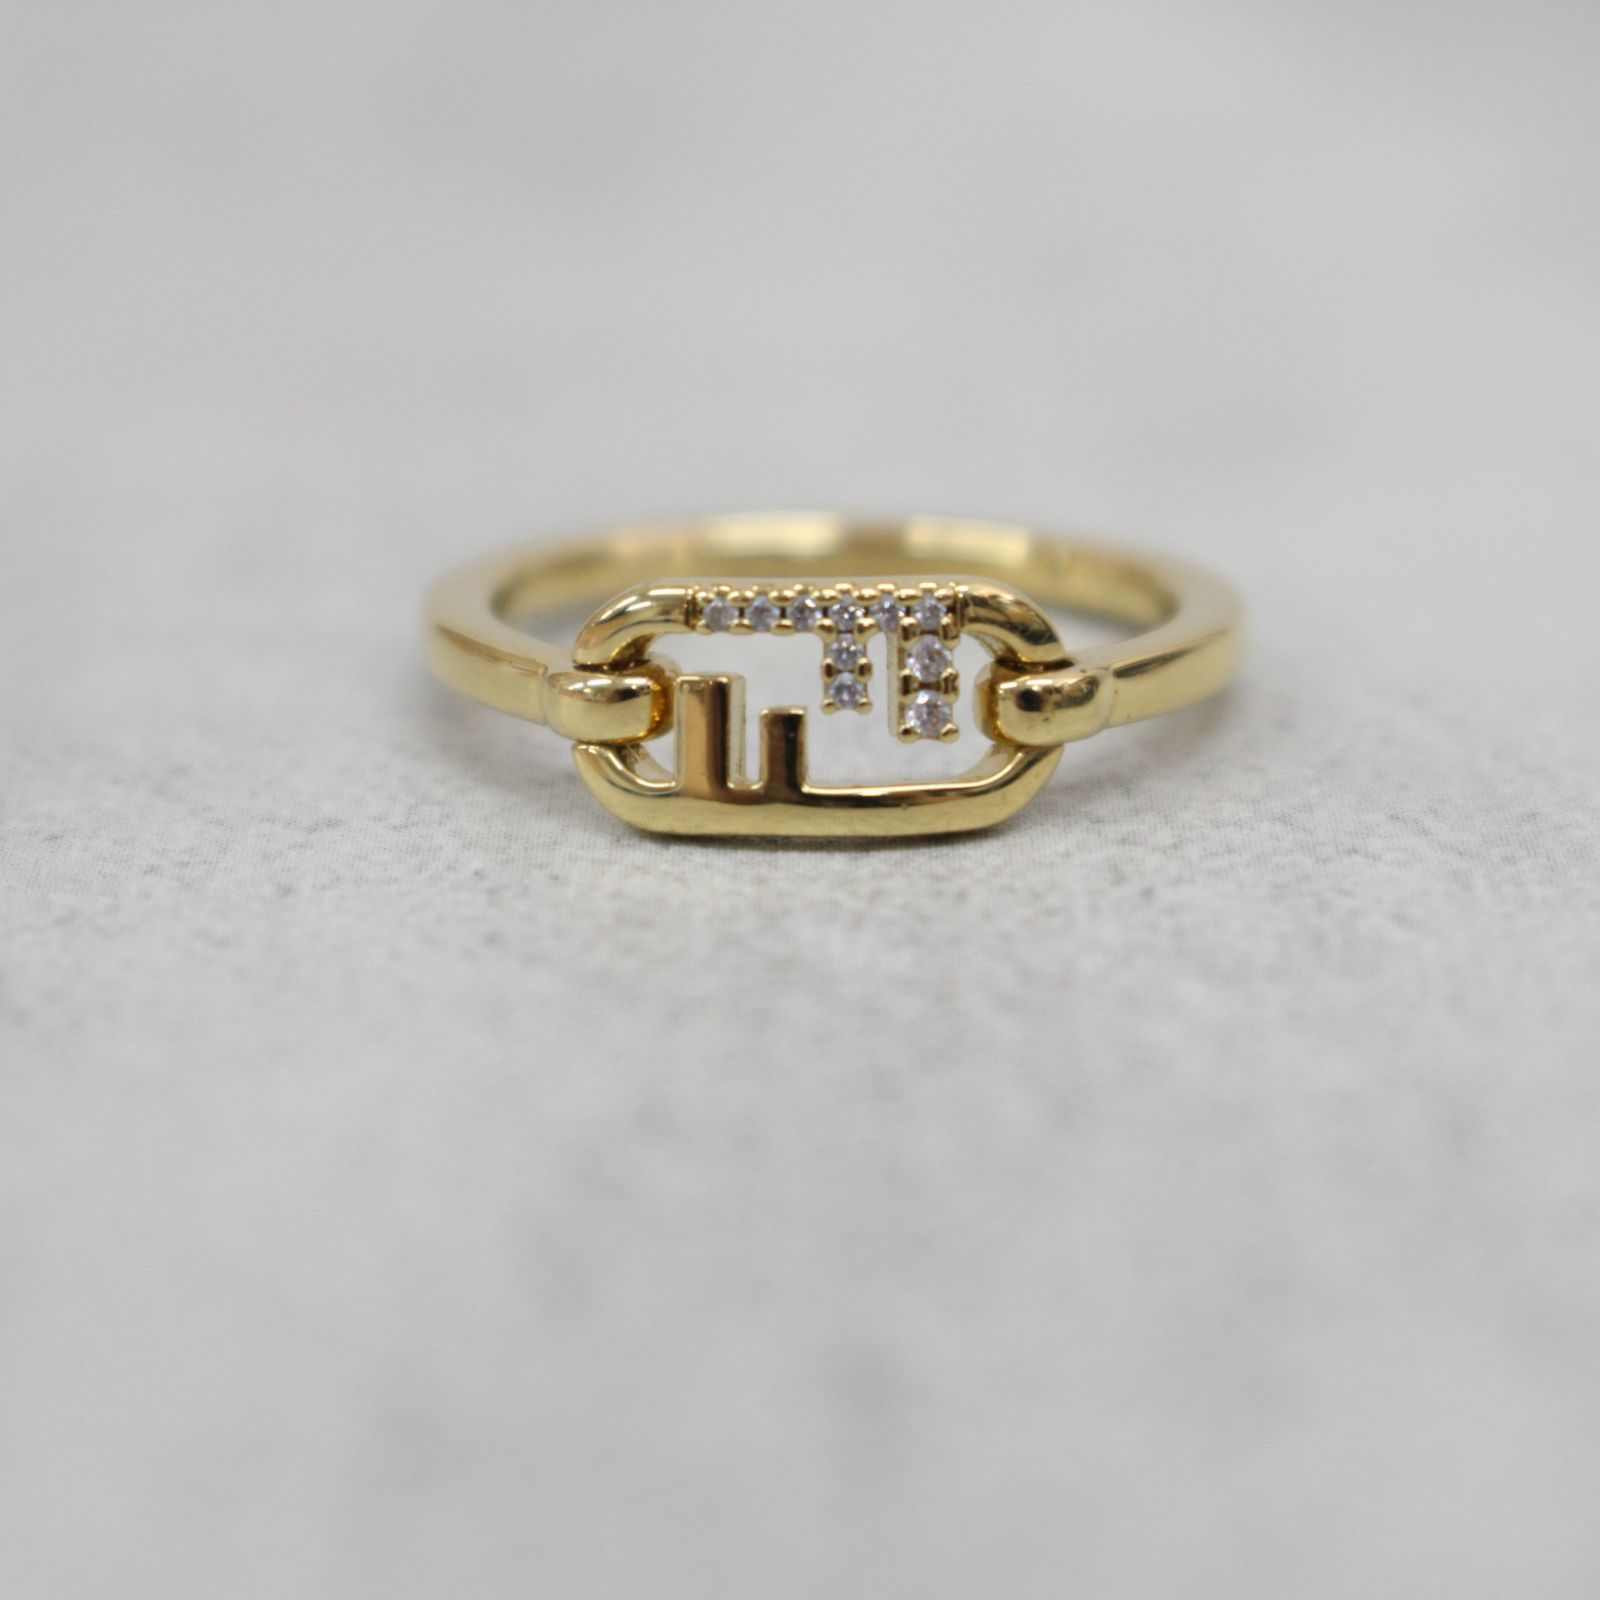 S156)【美品/現行品】FENDI/フェンディ オーロックリング ゴールドカラー Mサイズ 14号 指輪 アクセサリー